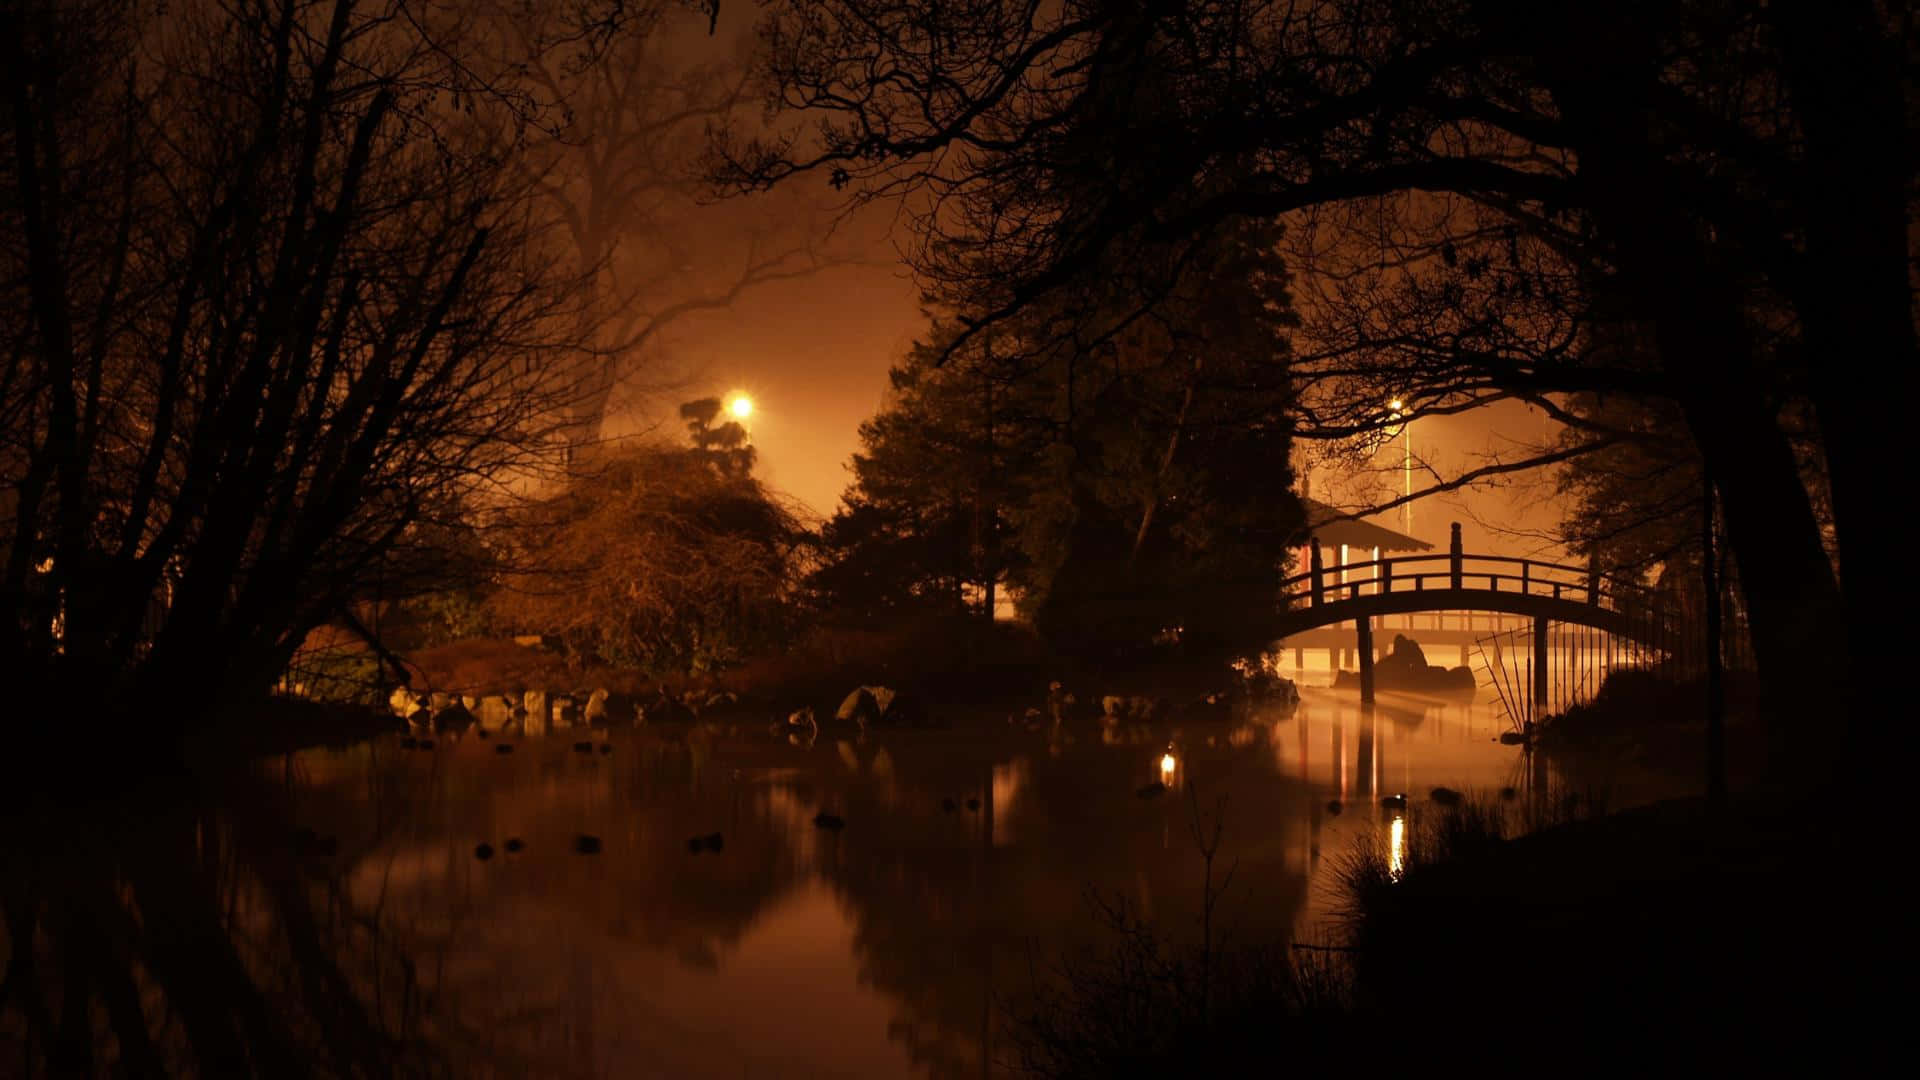 Arquitecturatradicional Japonesa En Pie Orgullosamente Bajo El Cielo Oscuro De La Noche. Fondo de pantalla